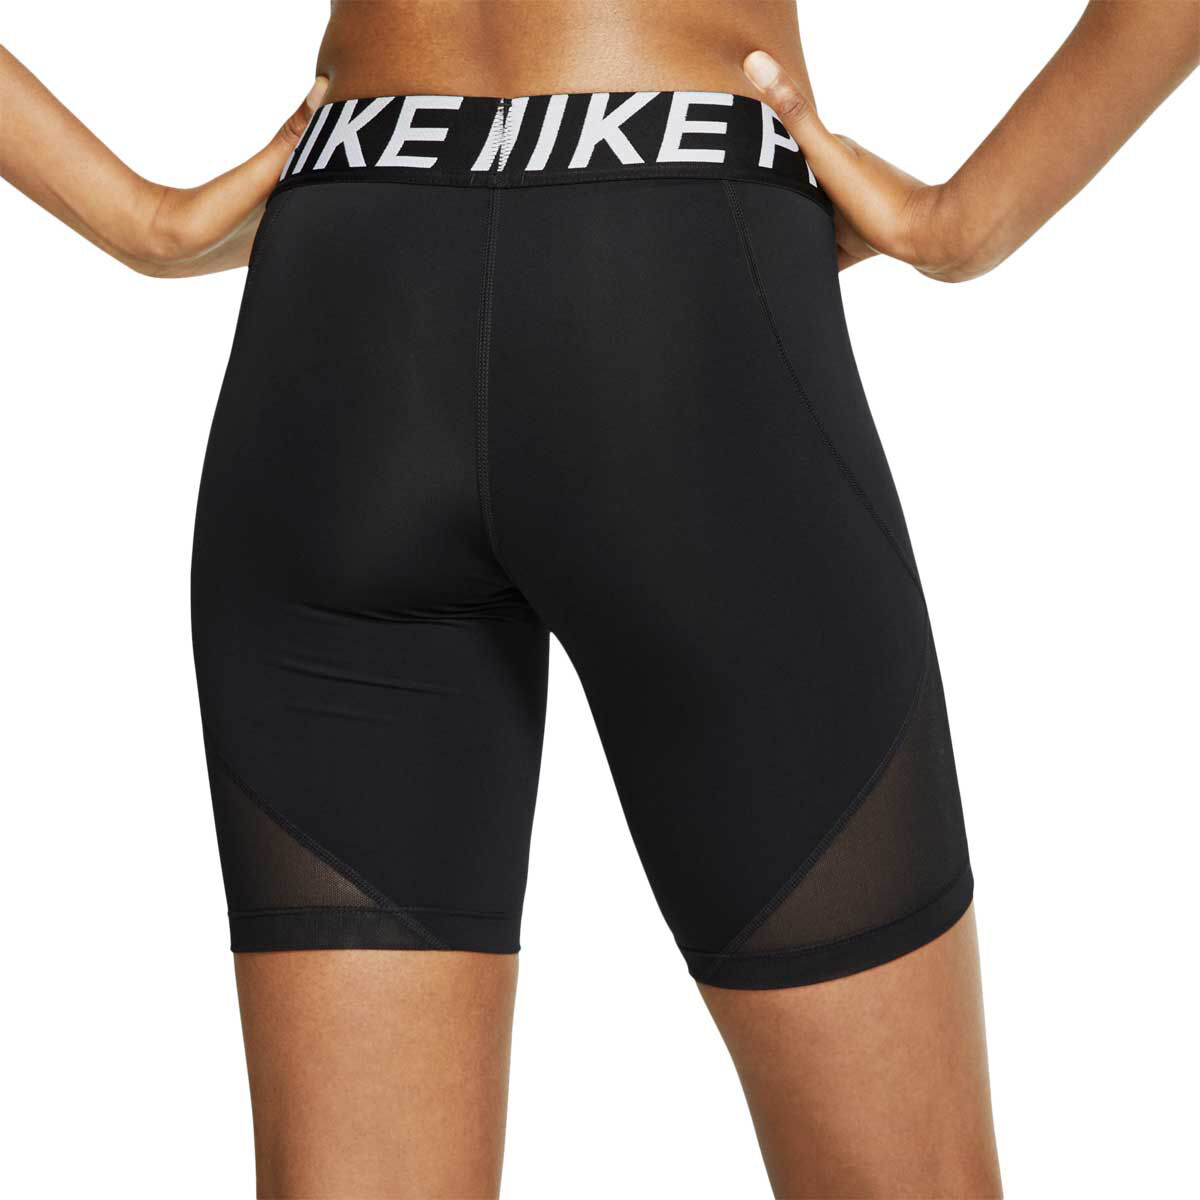 nike biker shorts 8 inch